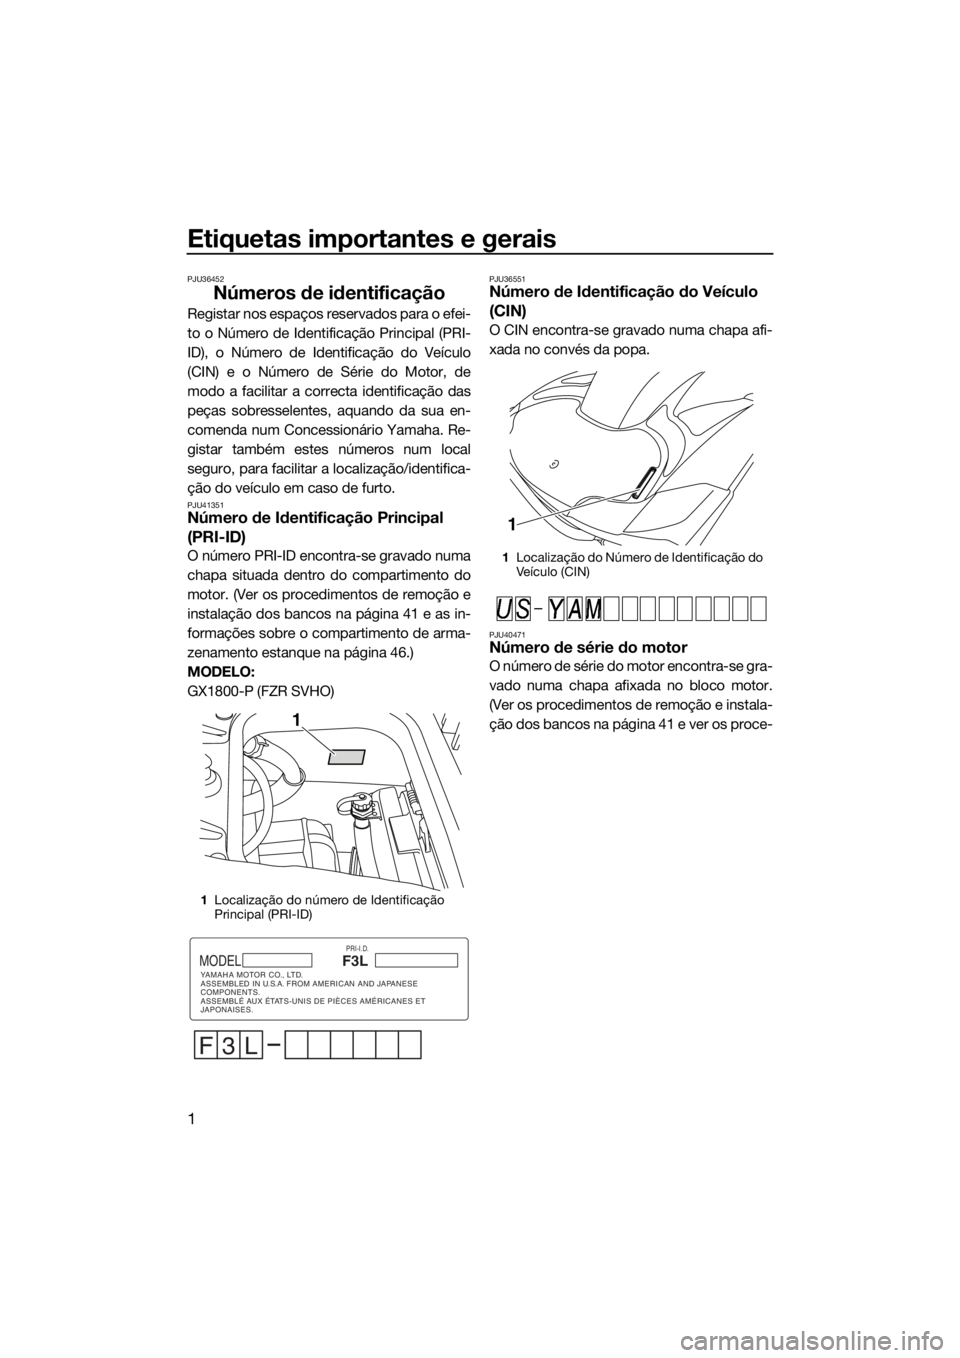 YAMAHA FZR 2015  Manual de utilização (in Portuguese) Etiquetas importantes e gerais
1
PJU36452
Números de identificação
Registar nos espaços reservados para o efei-
to o Número de Identificação Principal (PRI-
ID), o Número de Identificação do